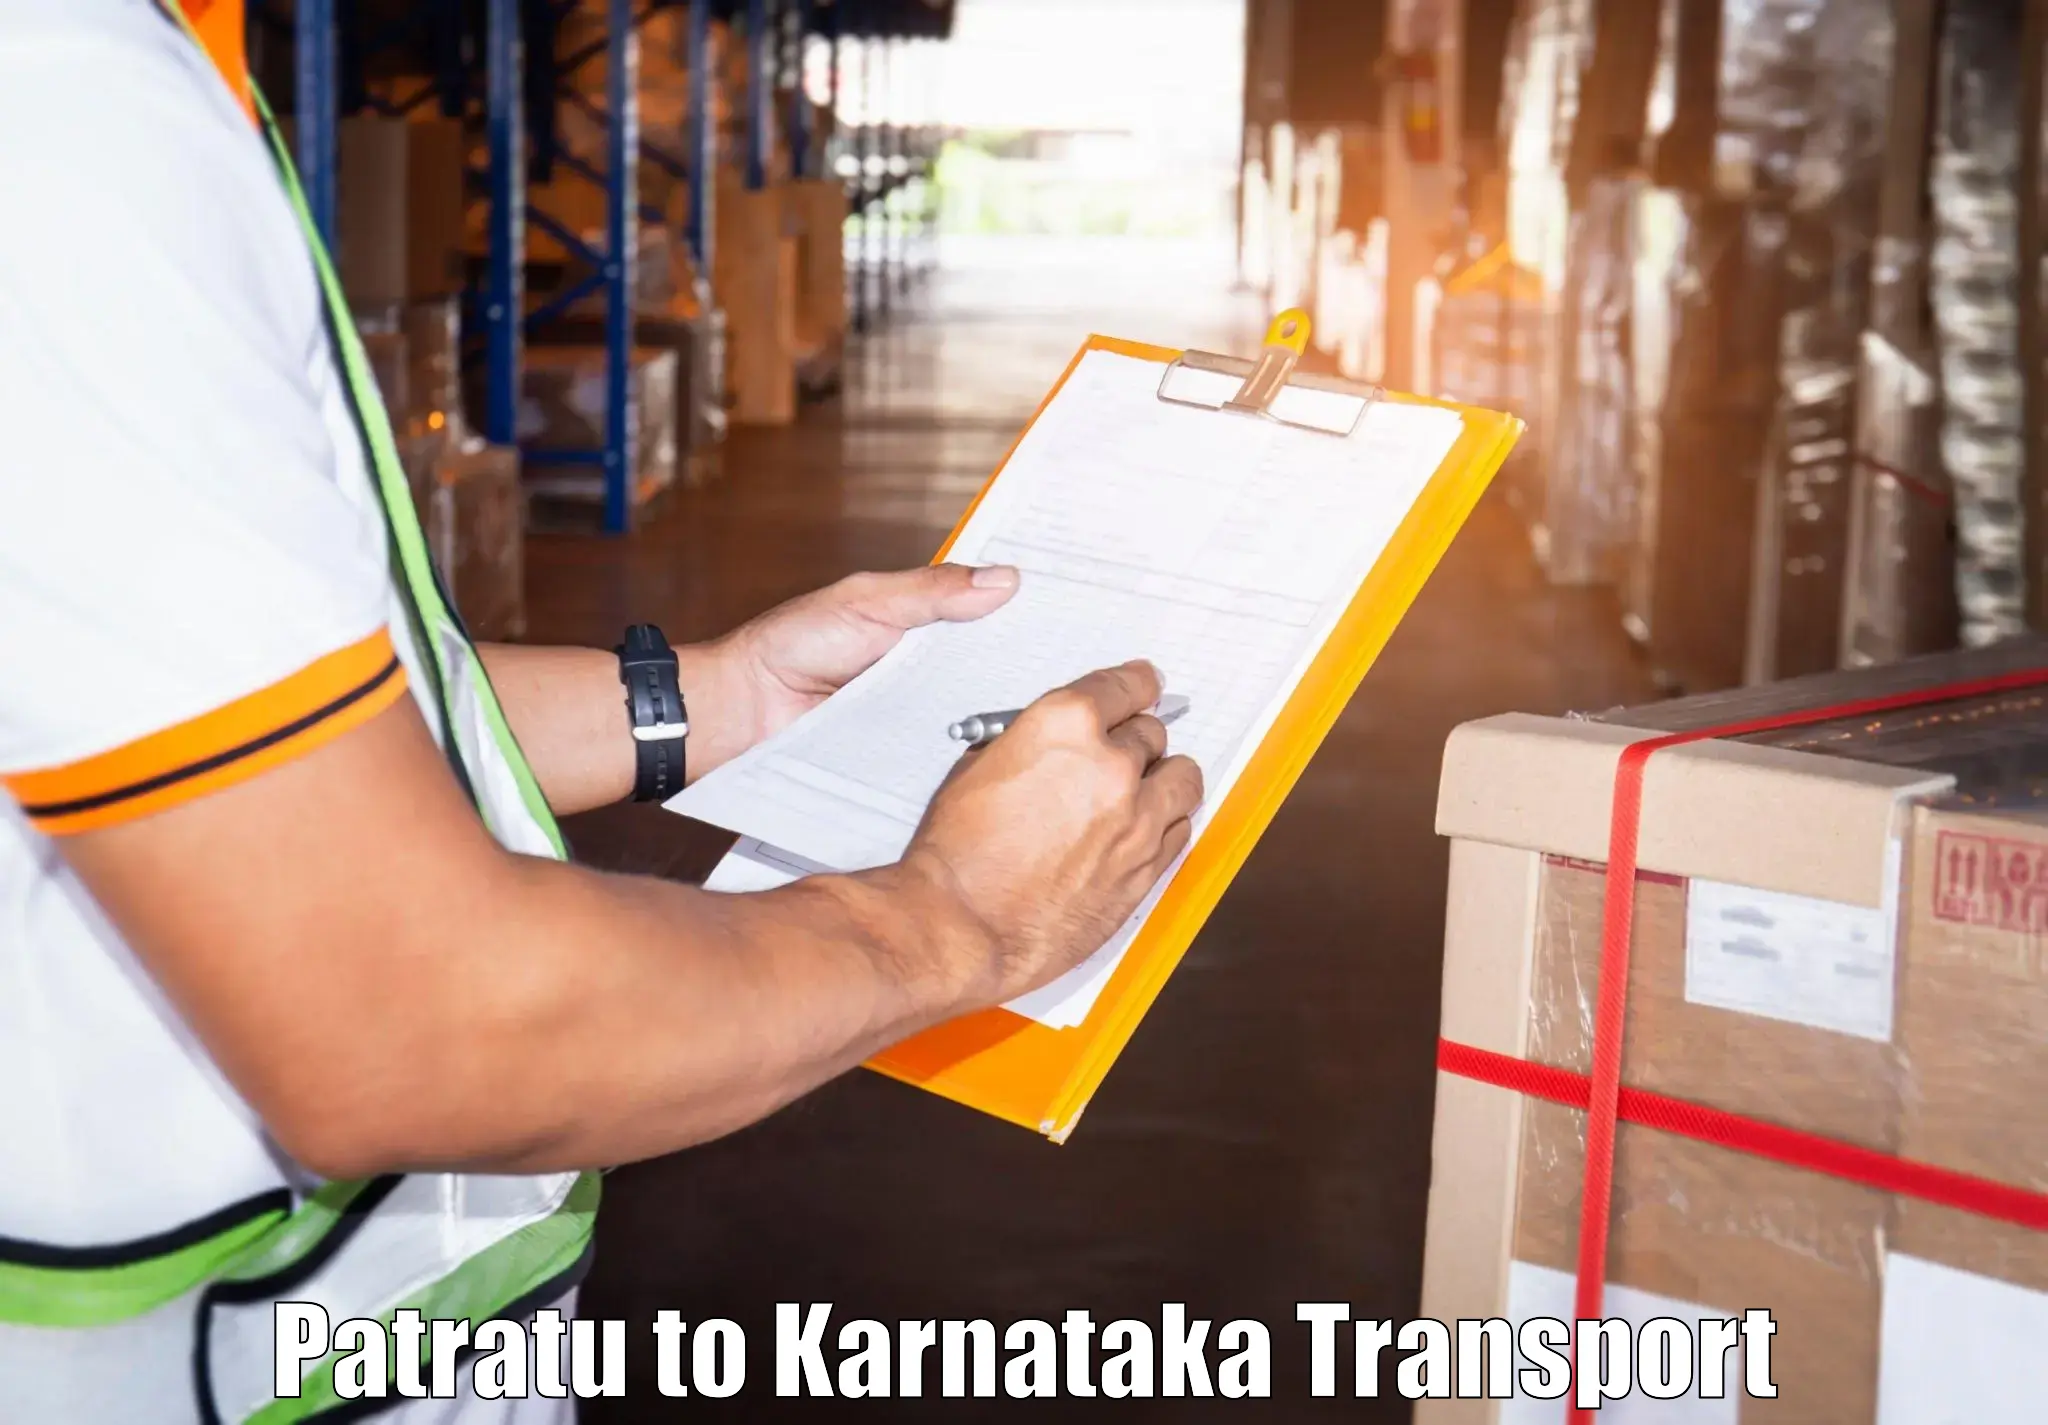 Truck transport companies in India Patratu to Harugeri